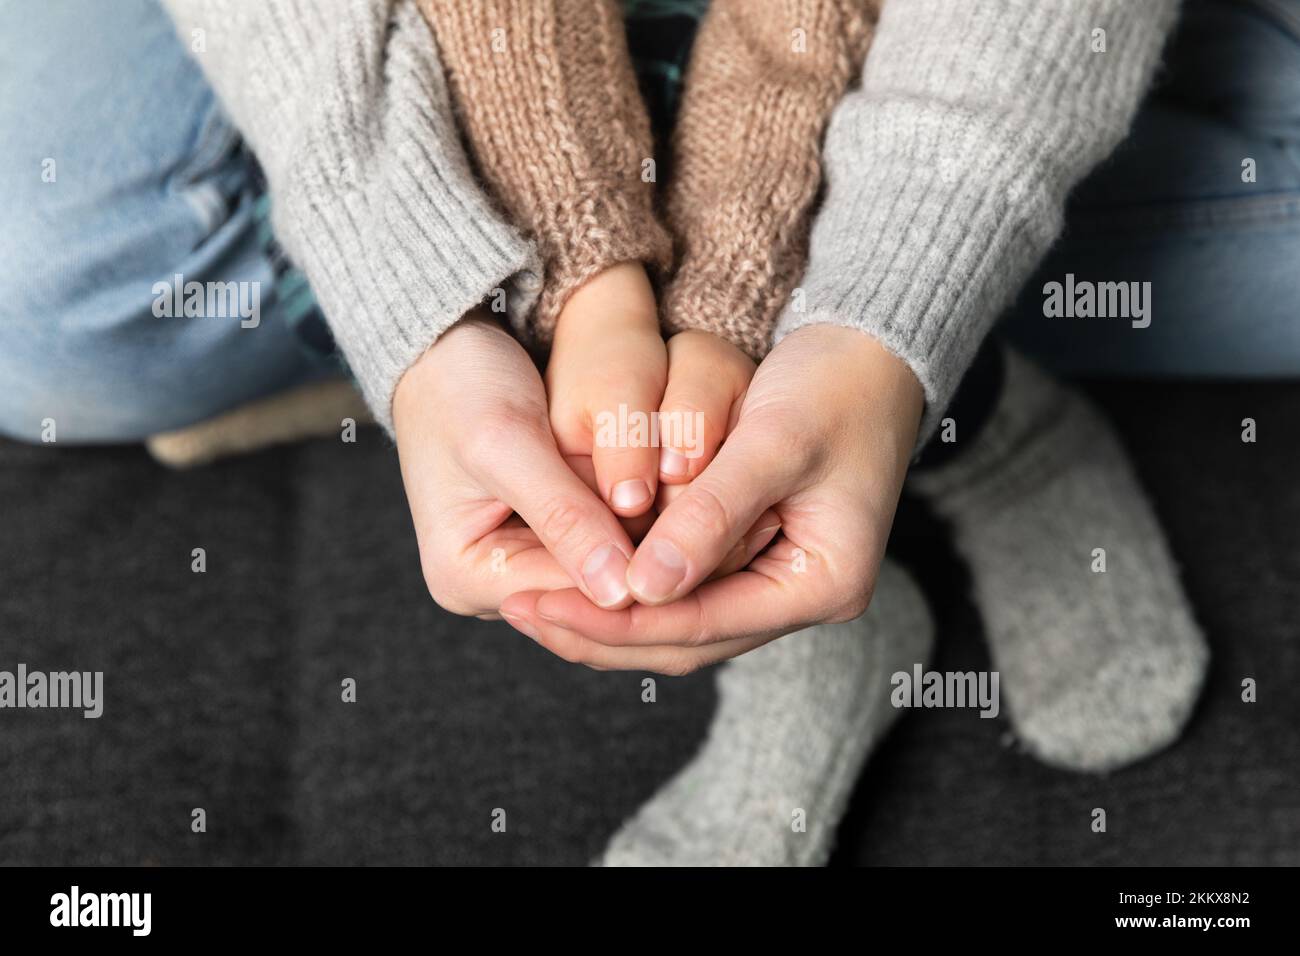 Femmes tenant la main de fils, pull tricoté et chaussettes en arrière-plan. Accueil chaleureux et concept de famille. Banque D'Images